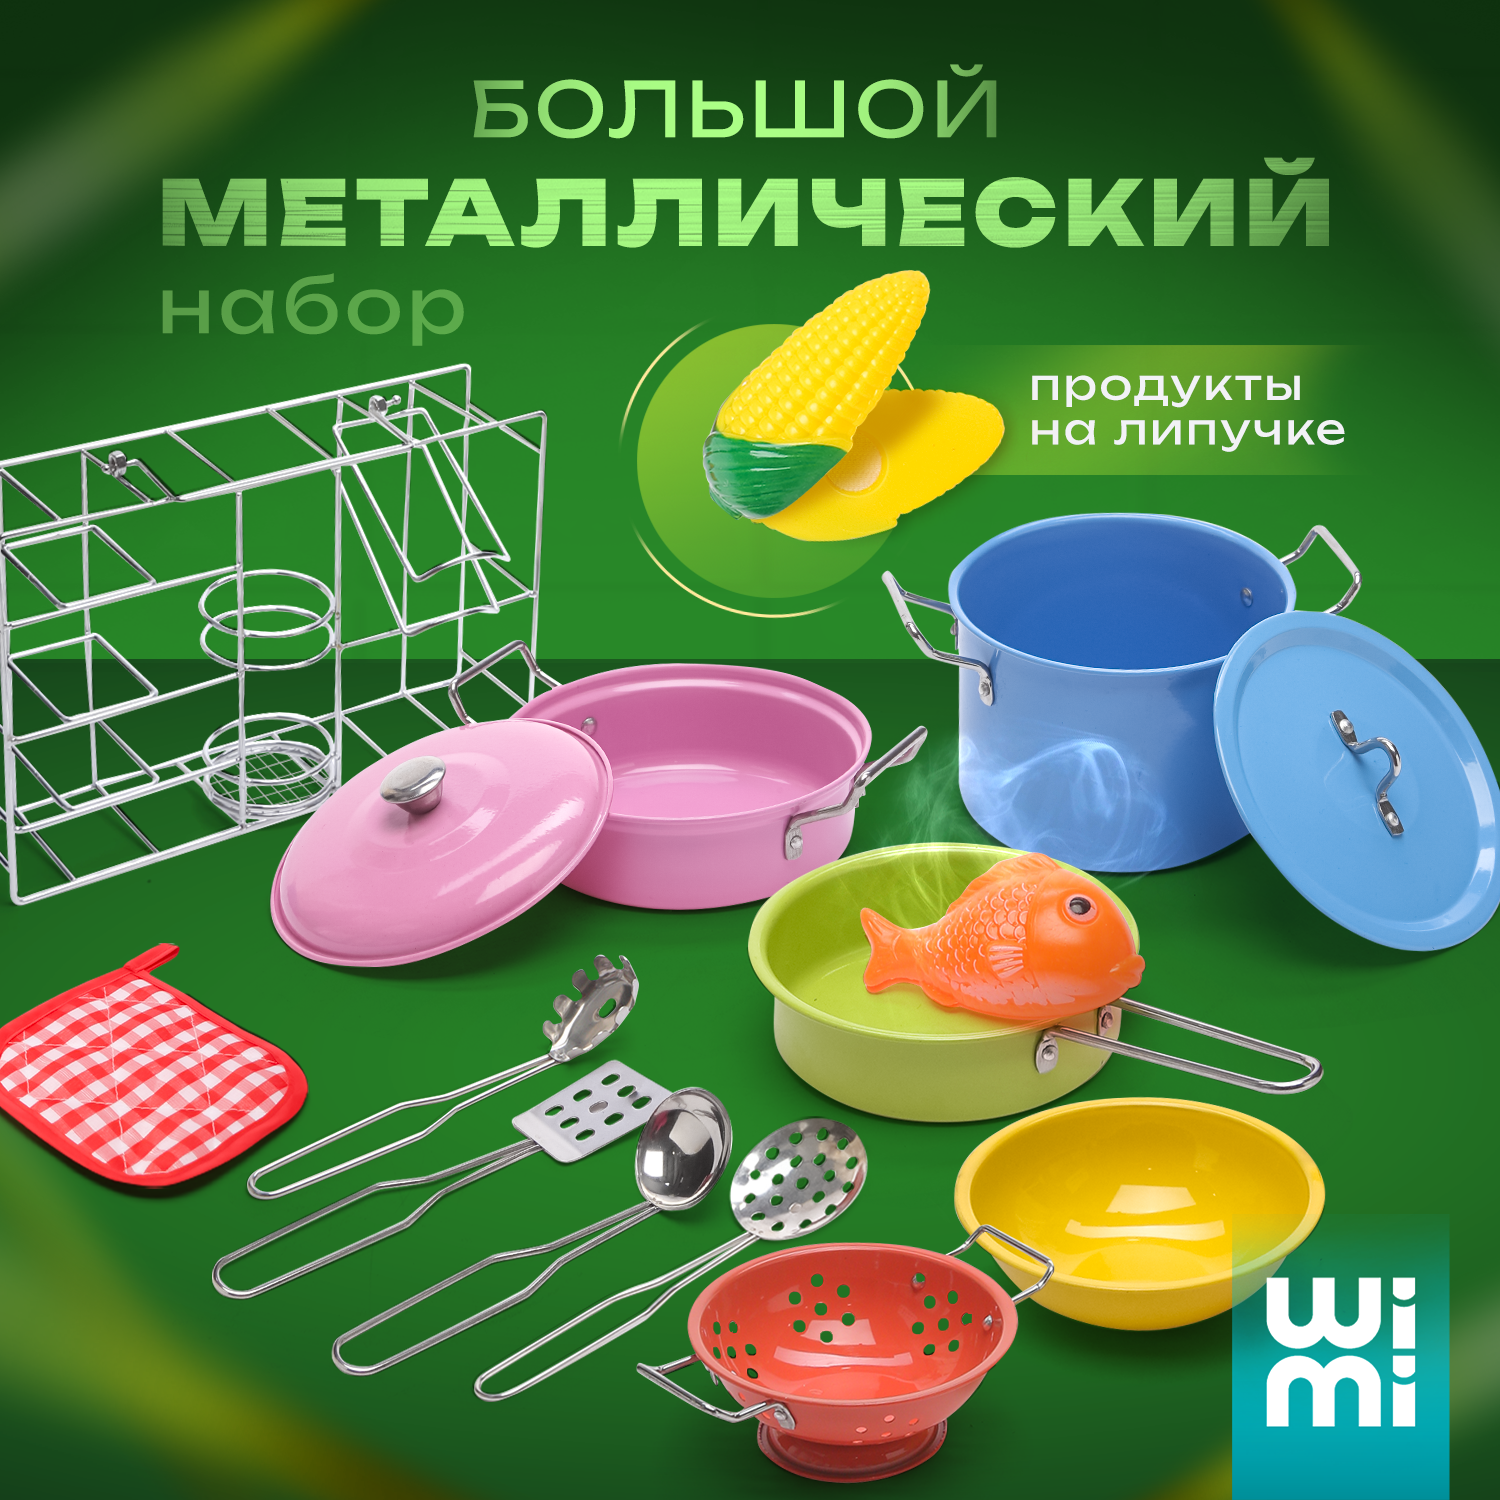 Детская посуда игрушечная Wimi, металлический набор с продуктами, 15 предметов